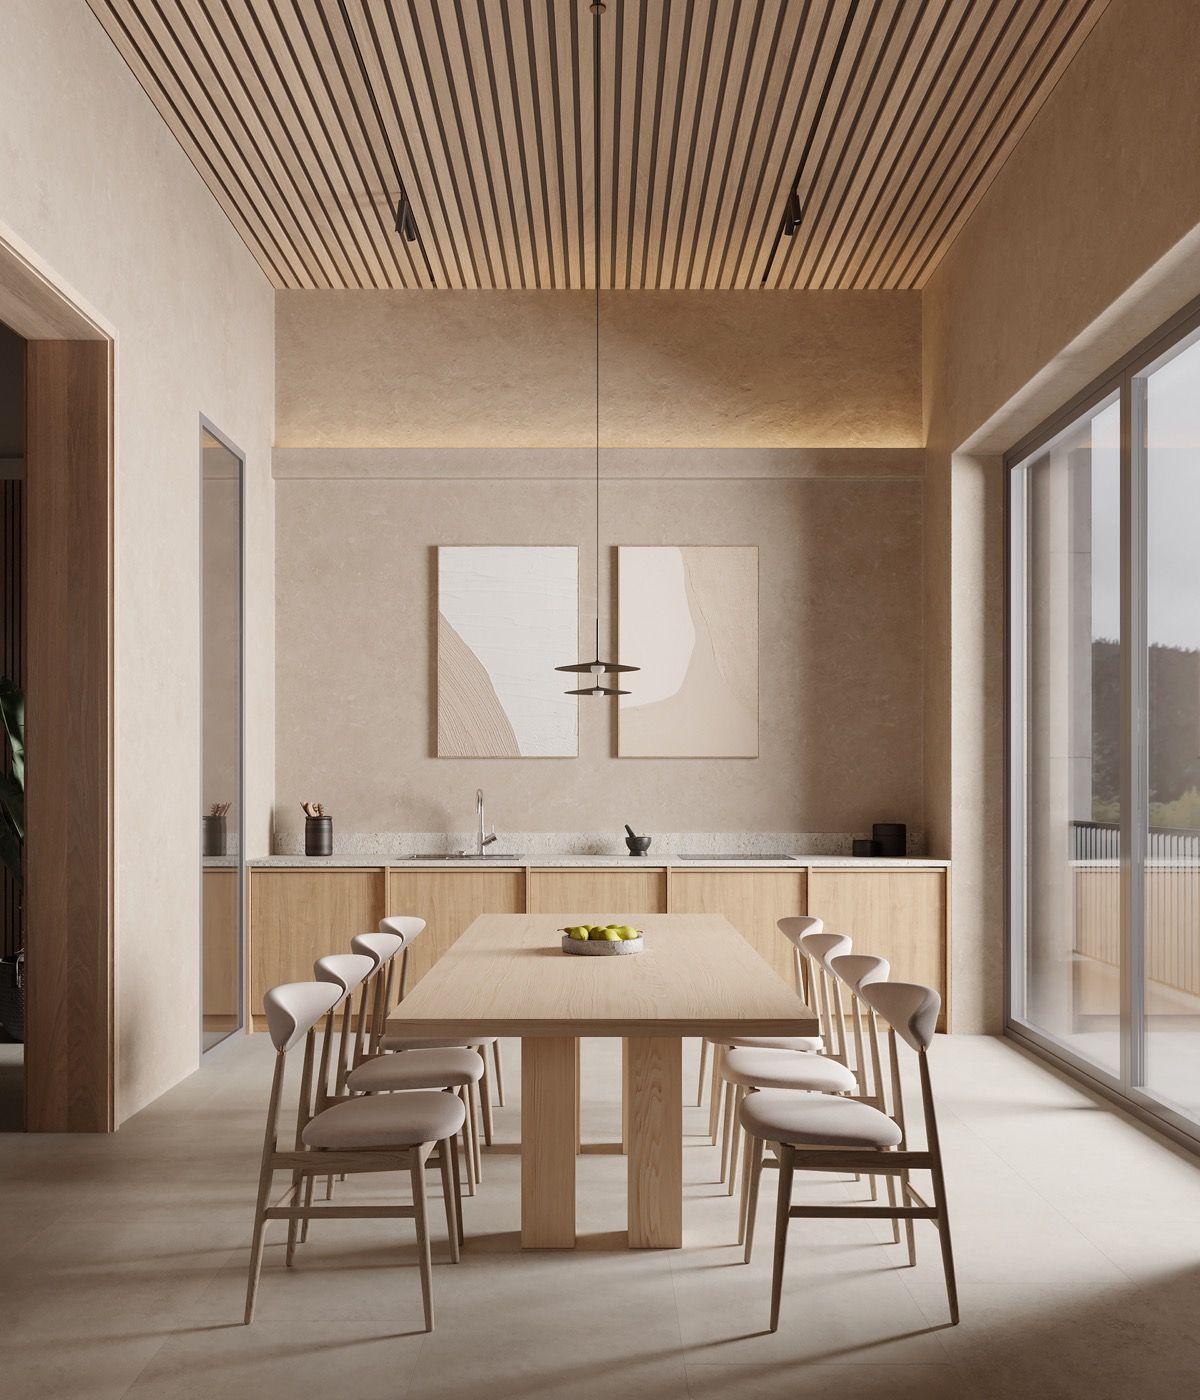 Desain ruang makan/Home Designing